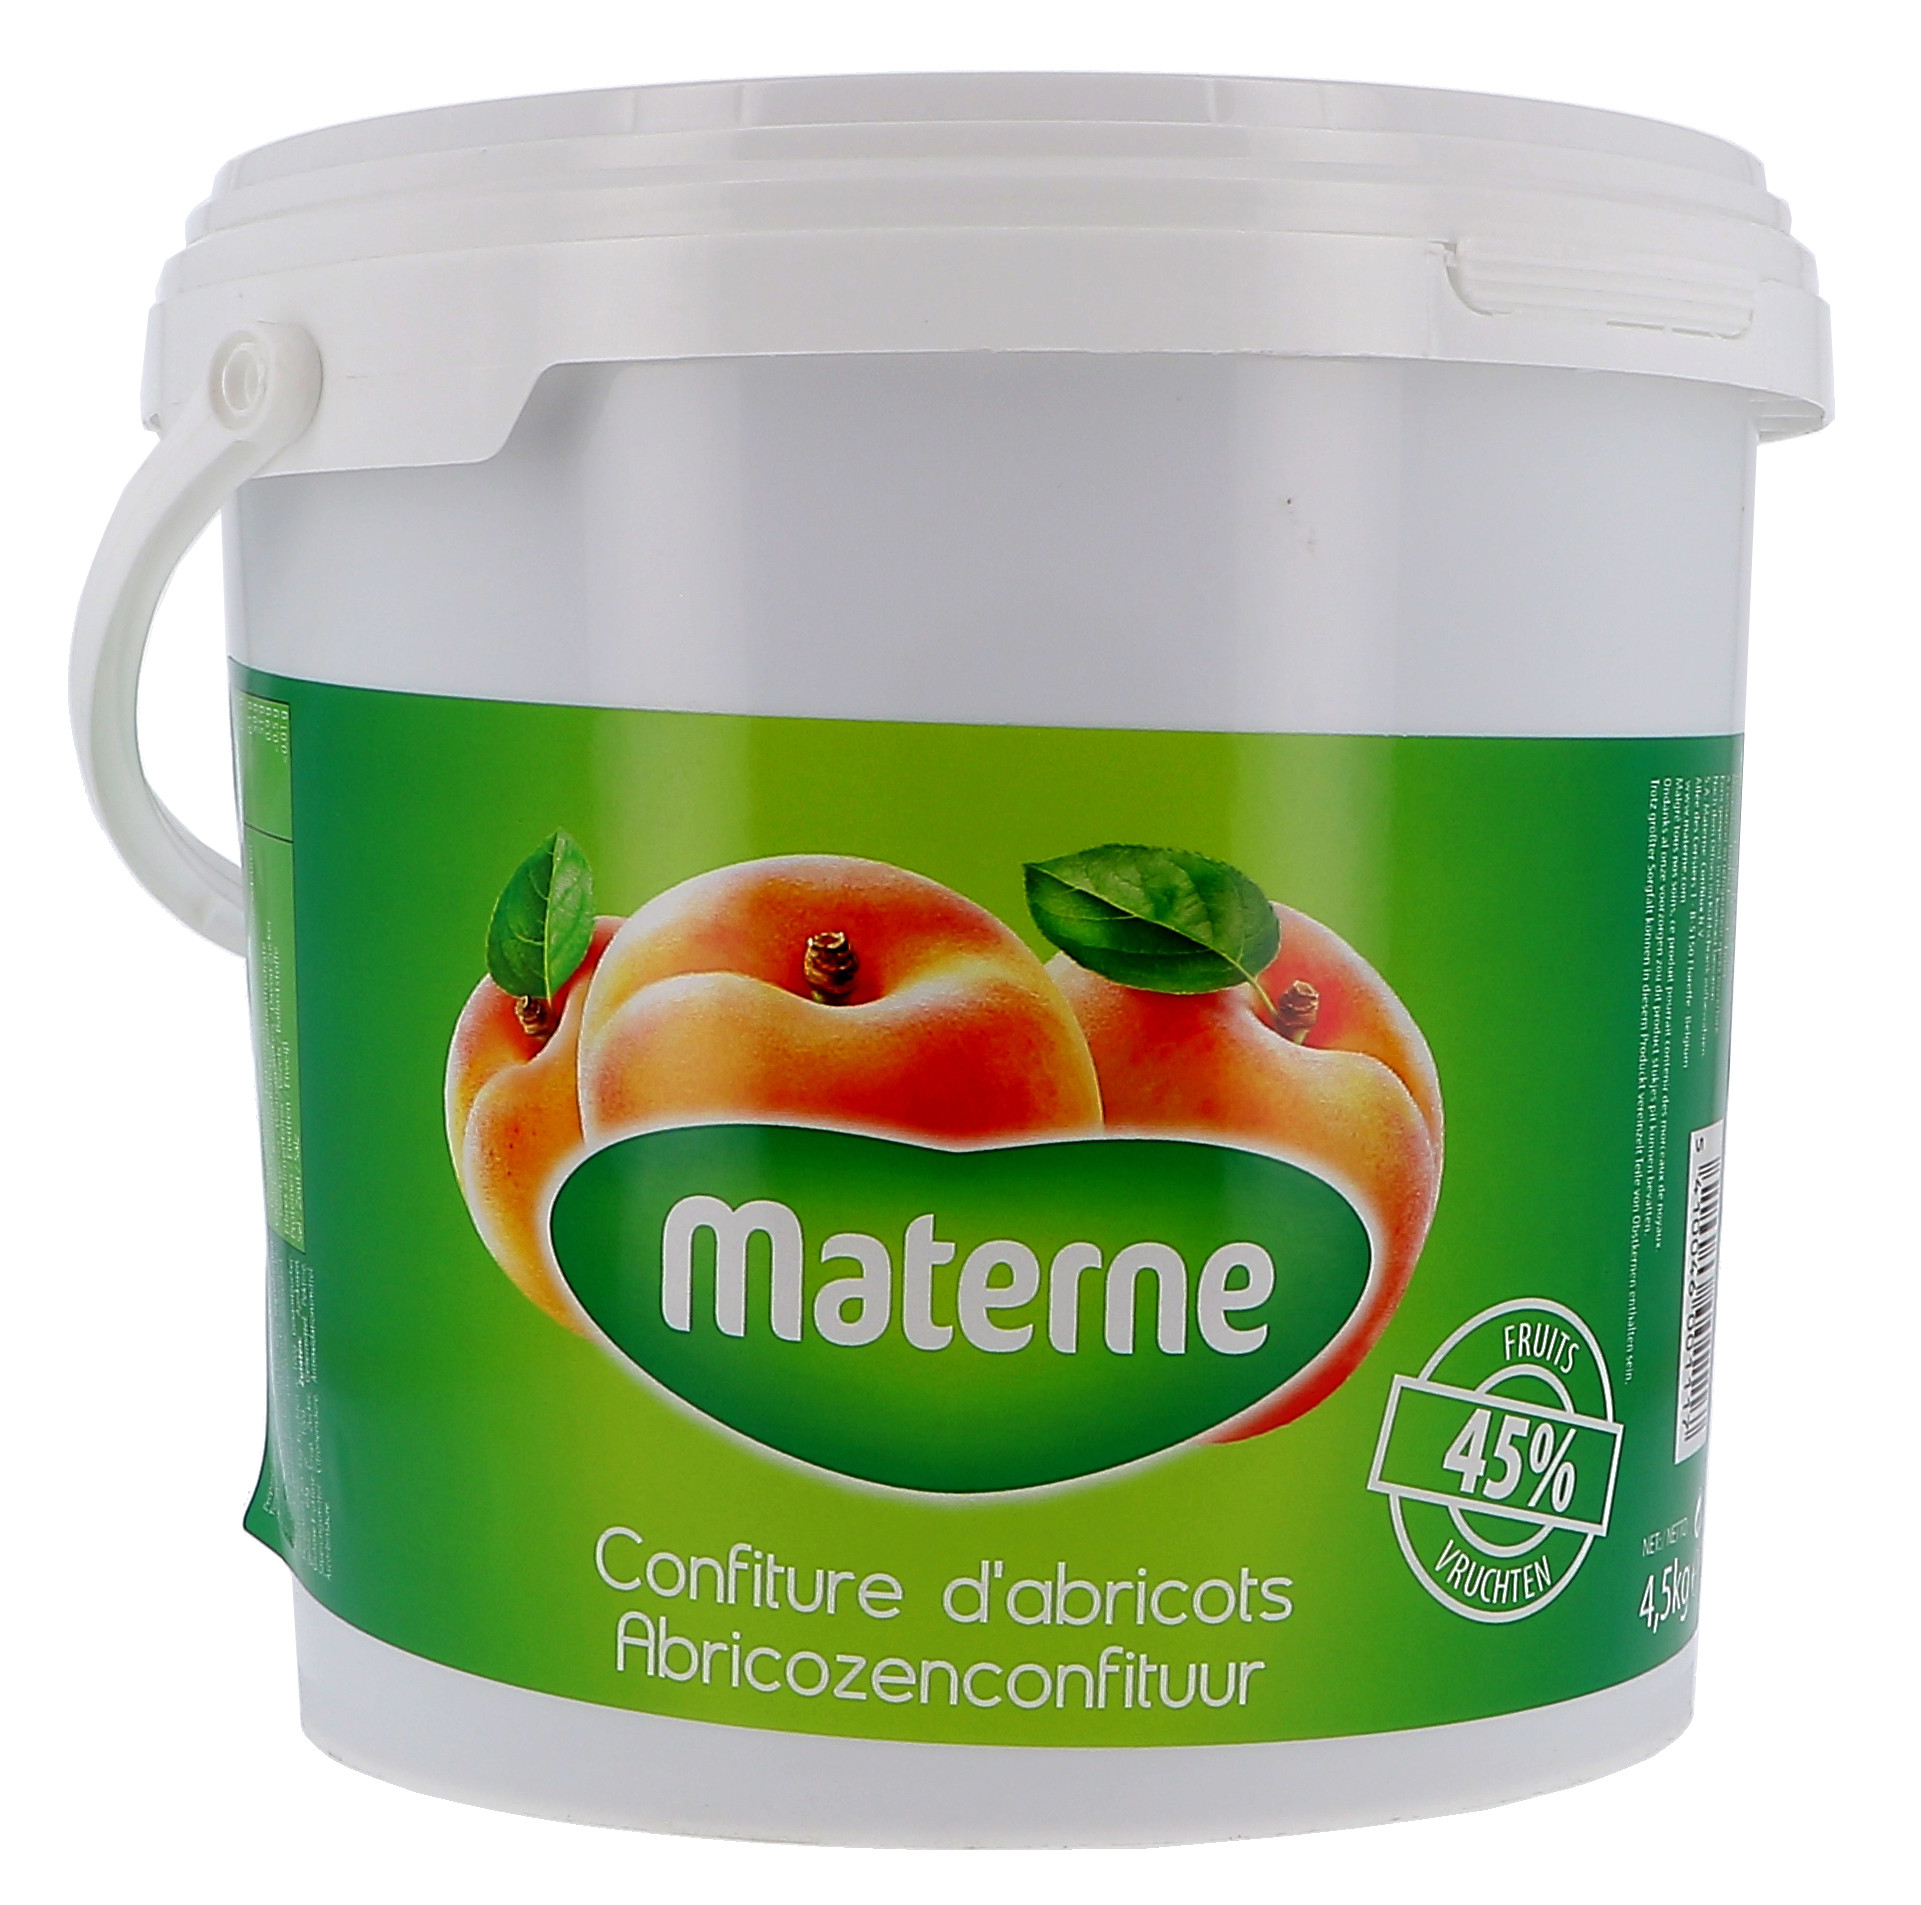 Materne Confiture d'abricots 4.5kg seau - Nevejan